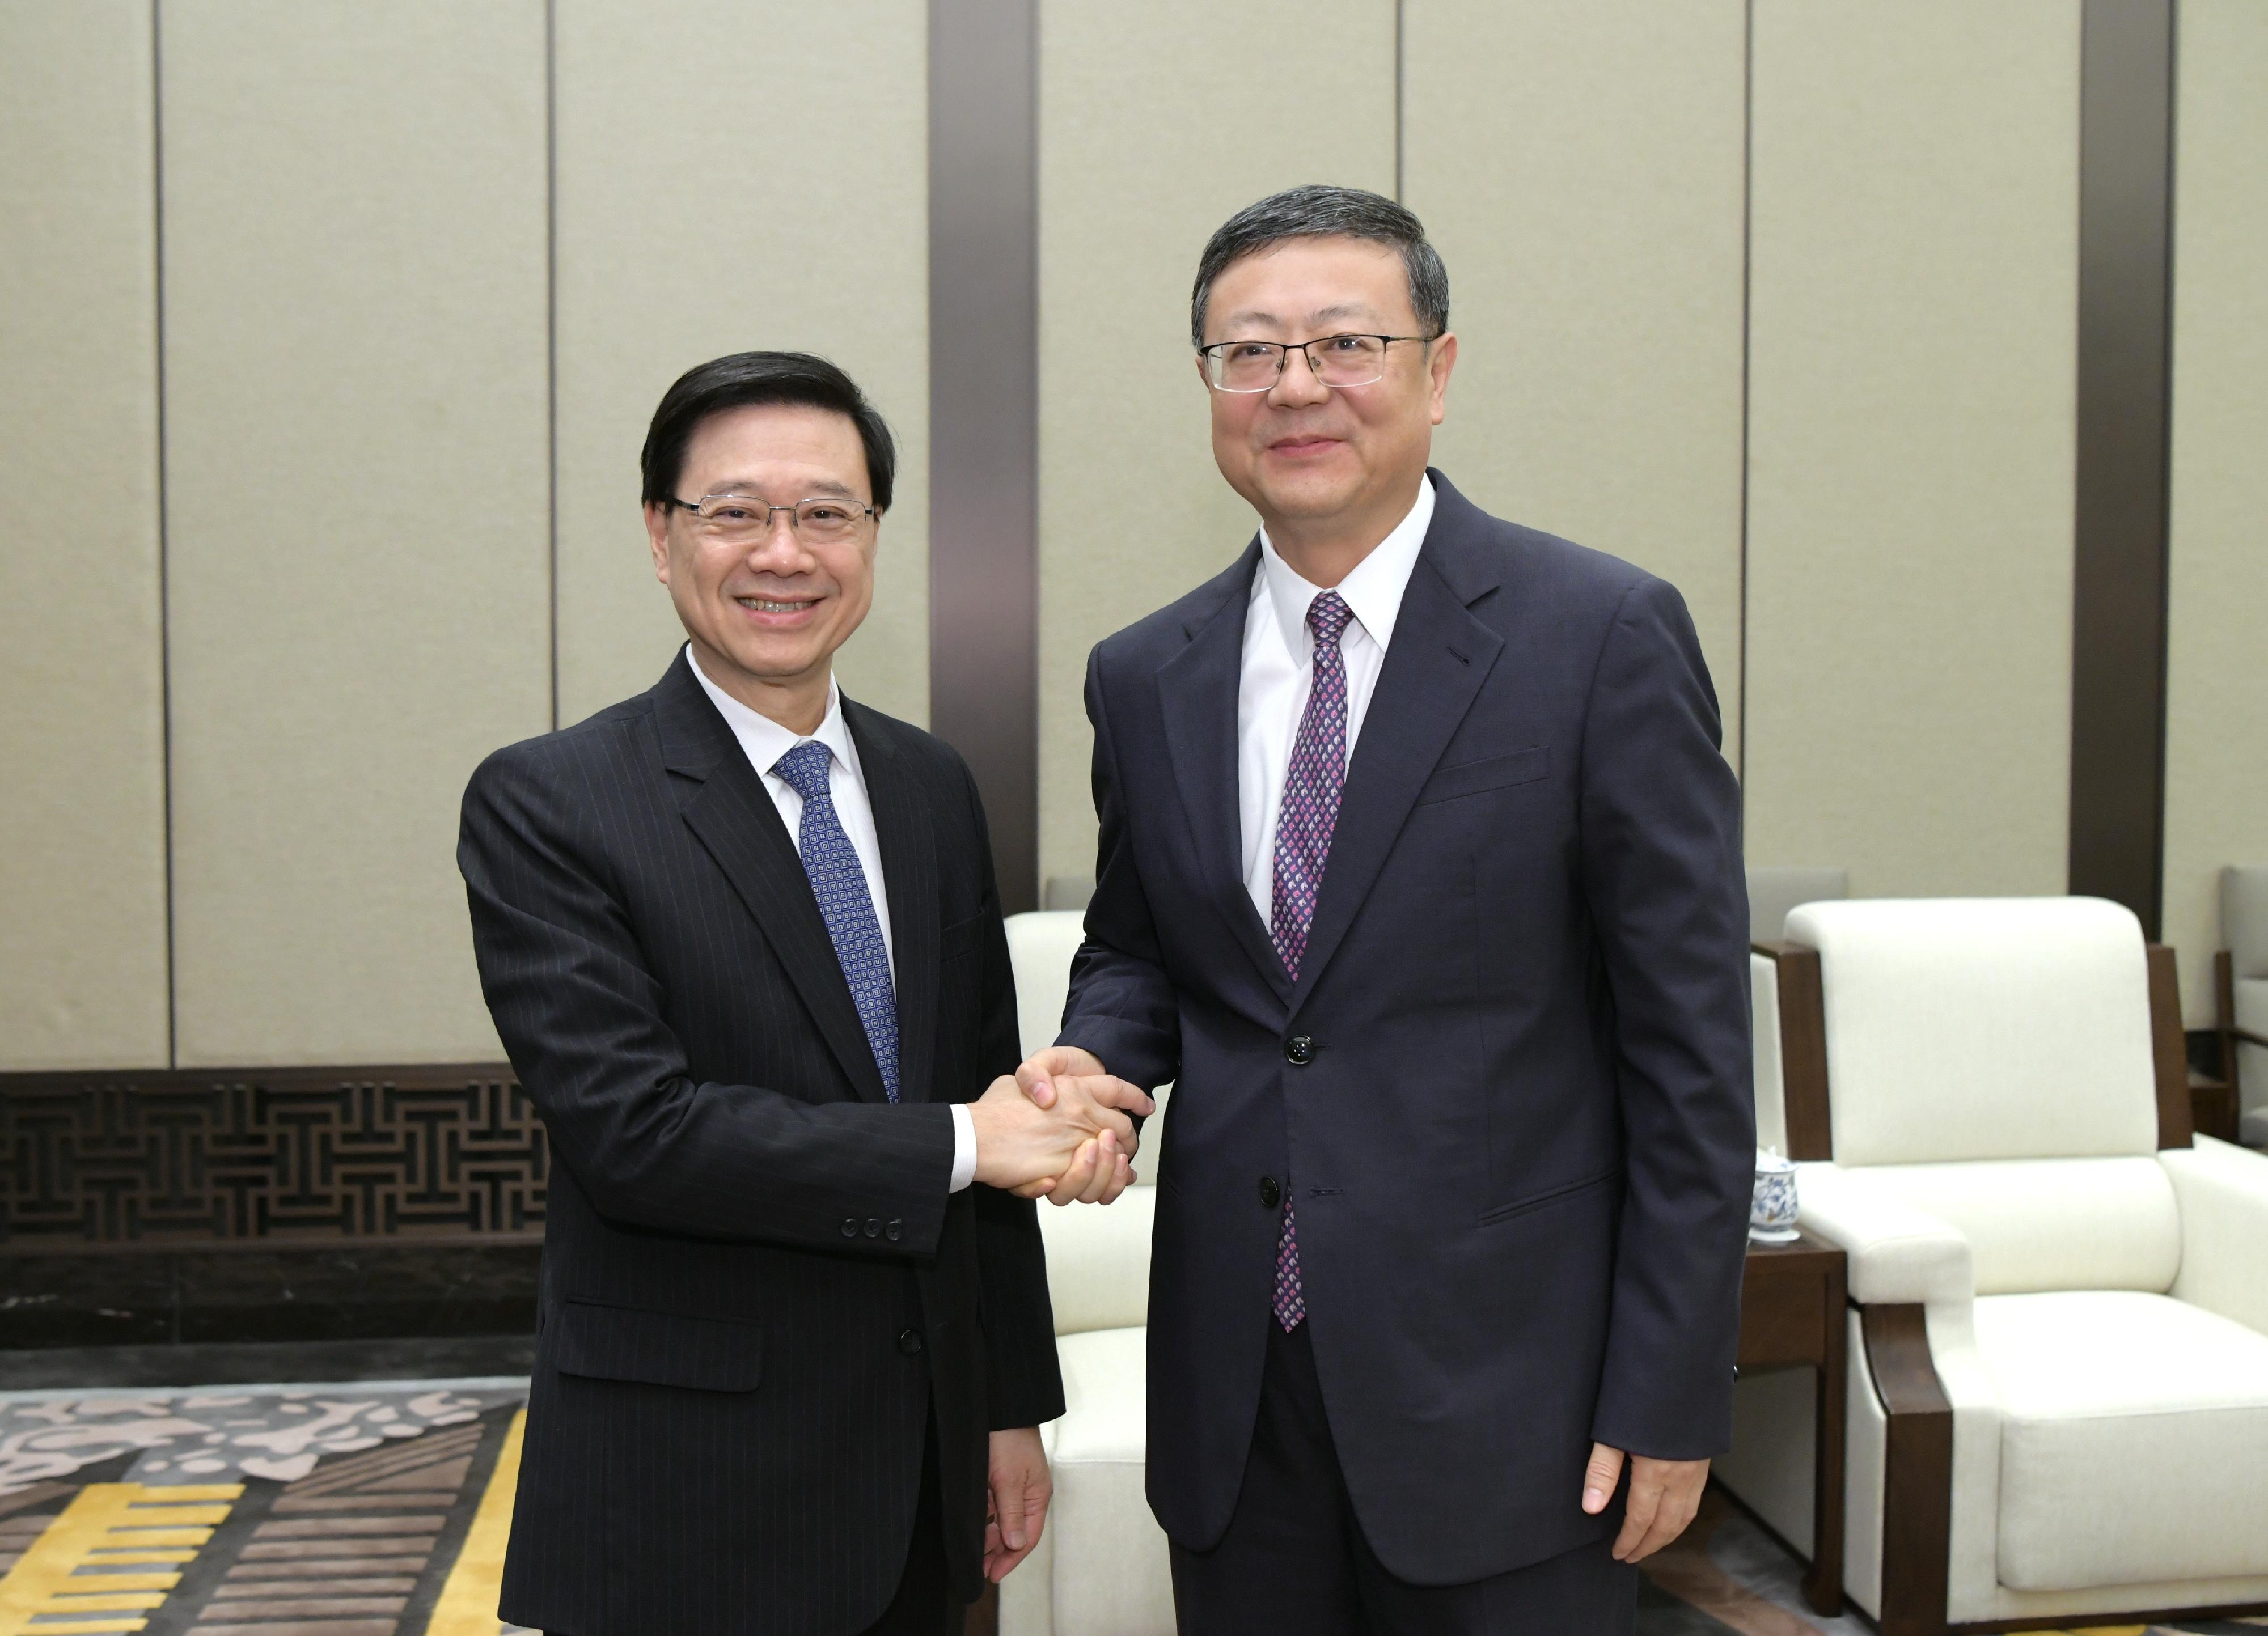 行政长官李家超今日（十一月四日）在上海与上海市委书记陈吉宁及上海市市长龚正会面。图示李家超（左）与陈吉宁（右）在会面前握手。
